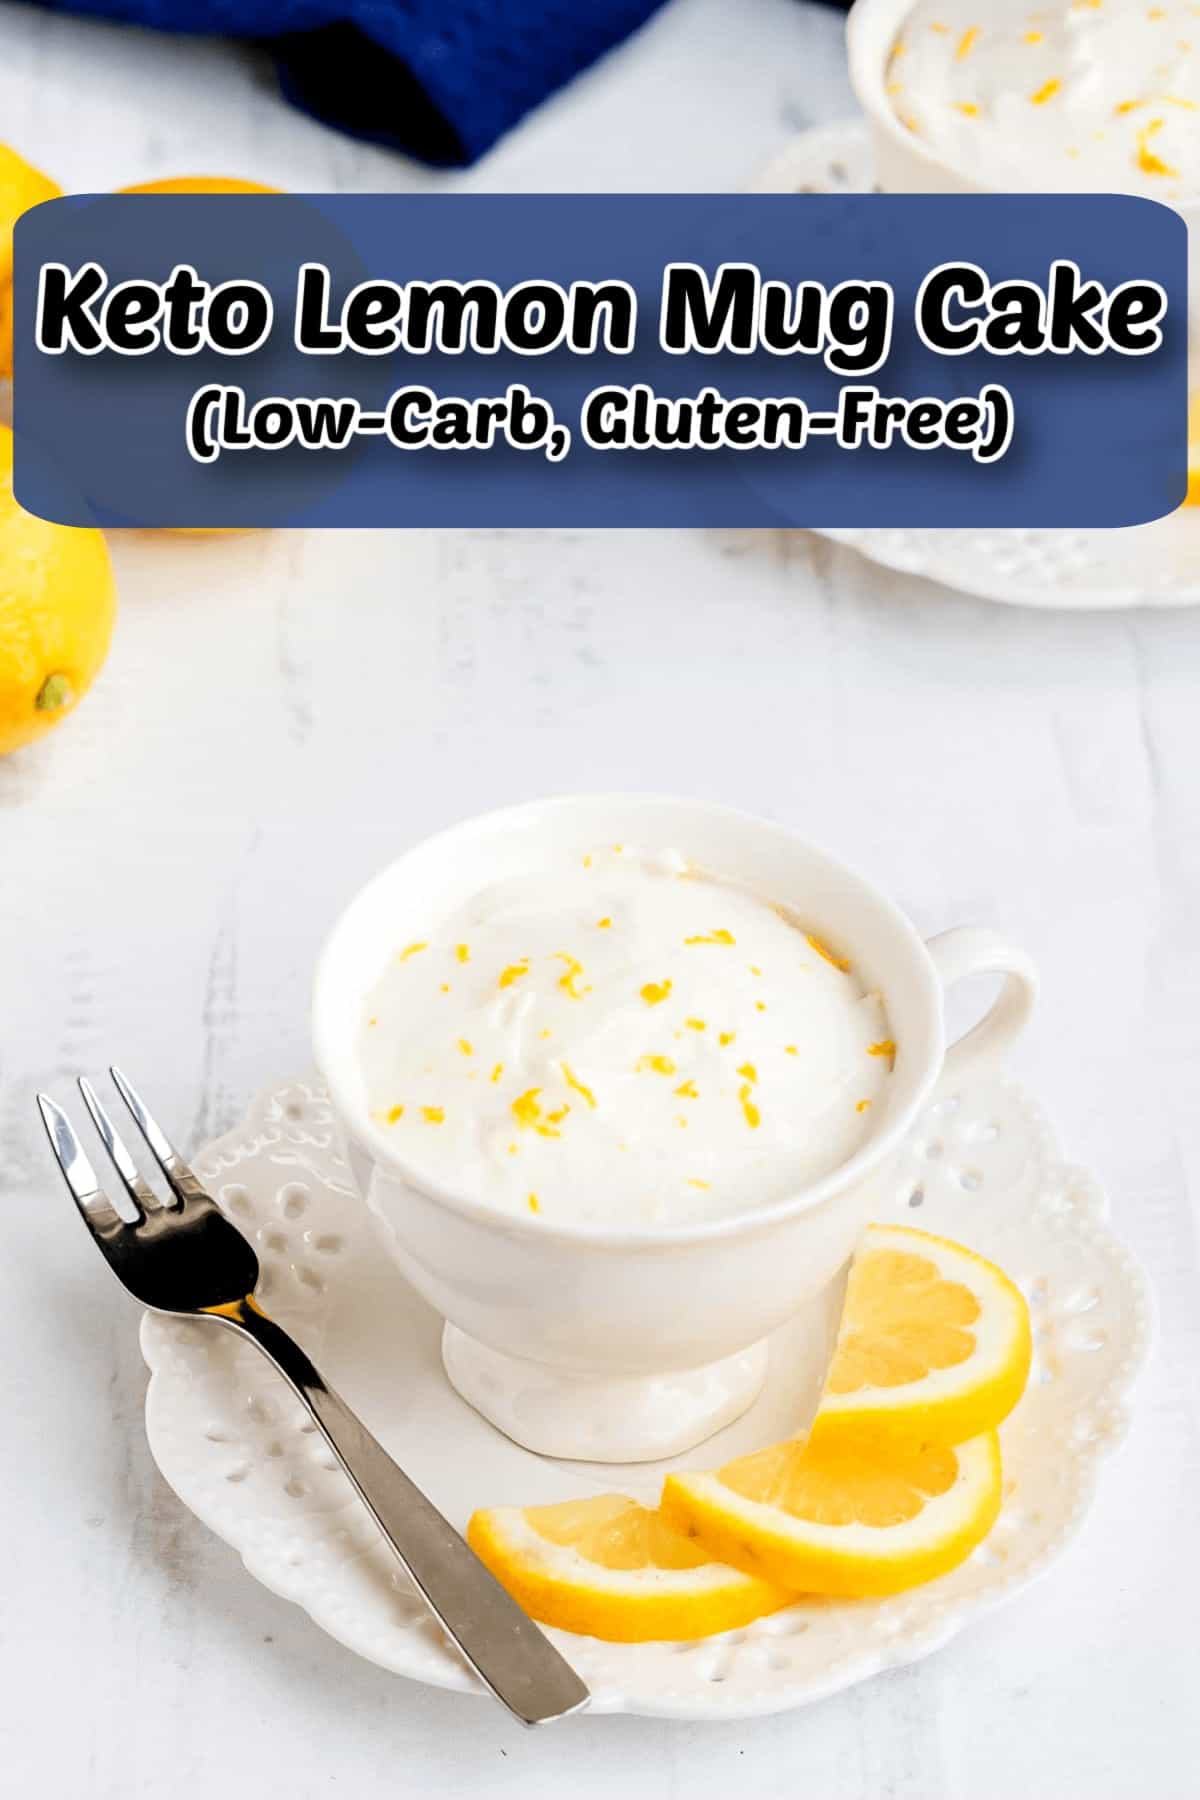 keto lemon mug cake low carb gluten free pintrest image